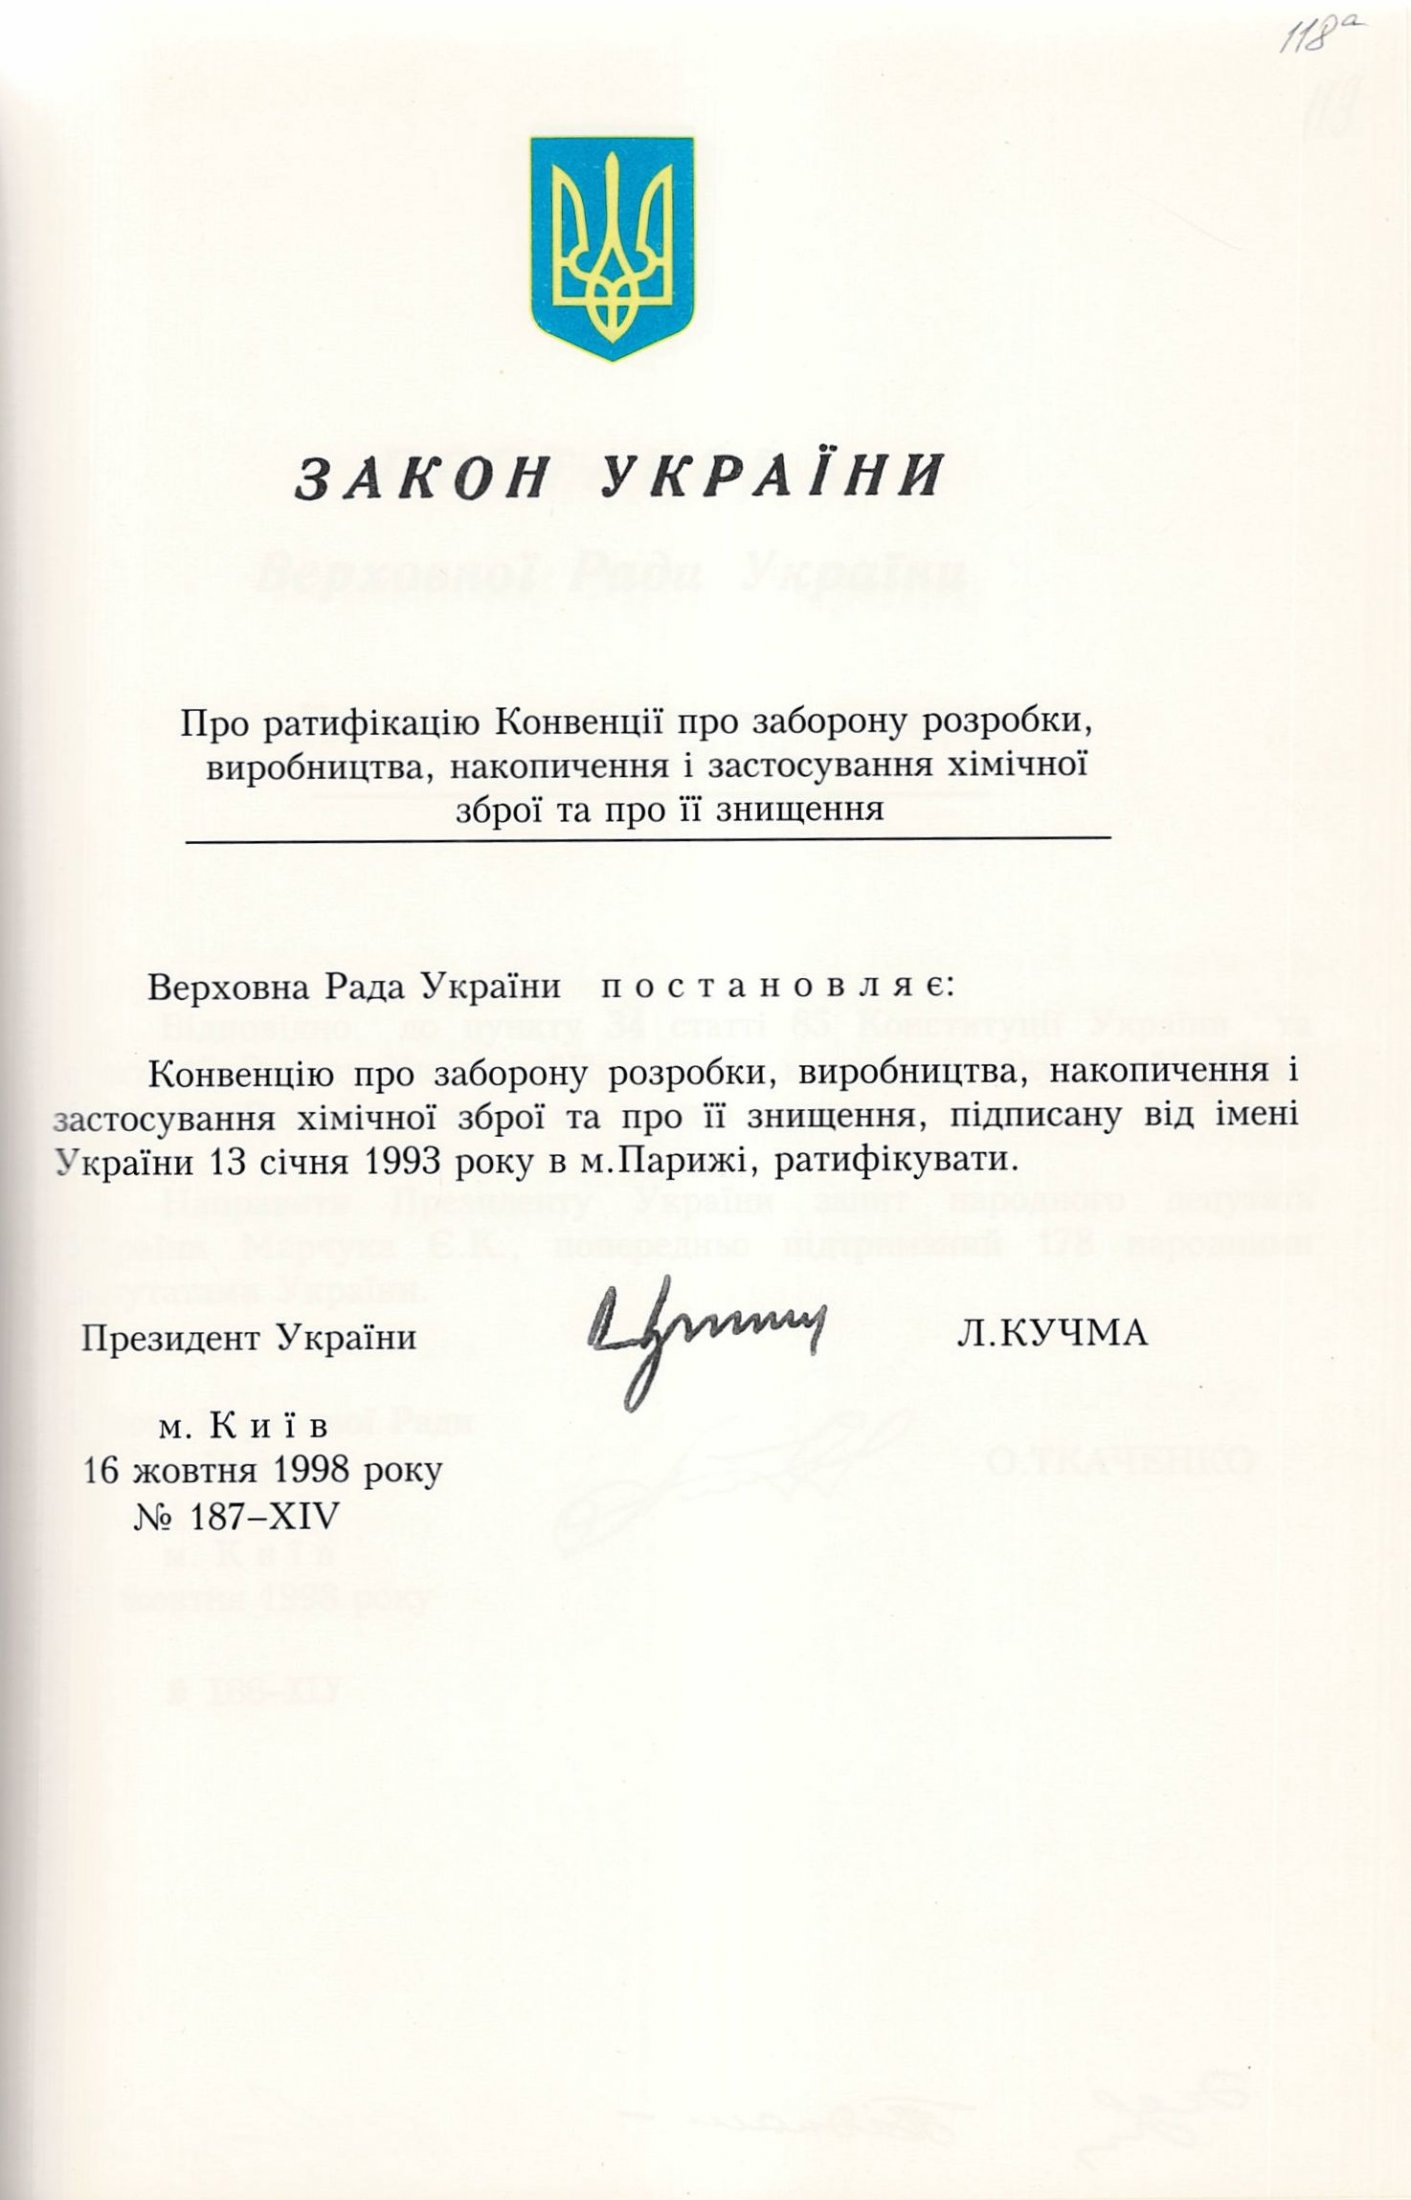 Закон України № 187-ХІV «Про ратифікацію Конвенції про заборону розробки, виробництва, накопичення і застосування хімічної зброї та про її знищення». 16 жовтня 1998 р.